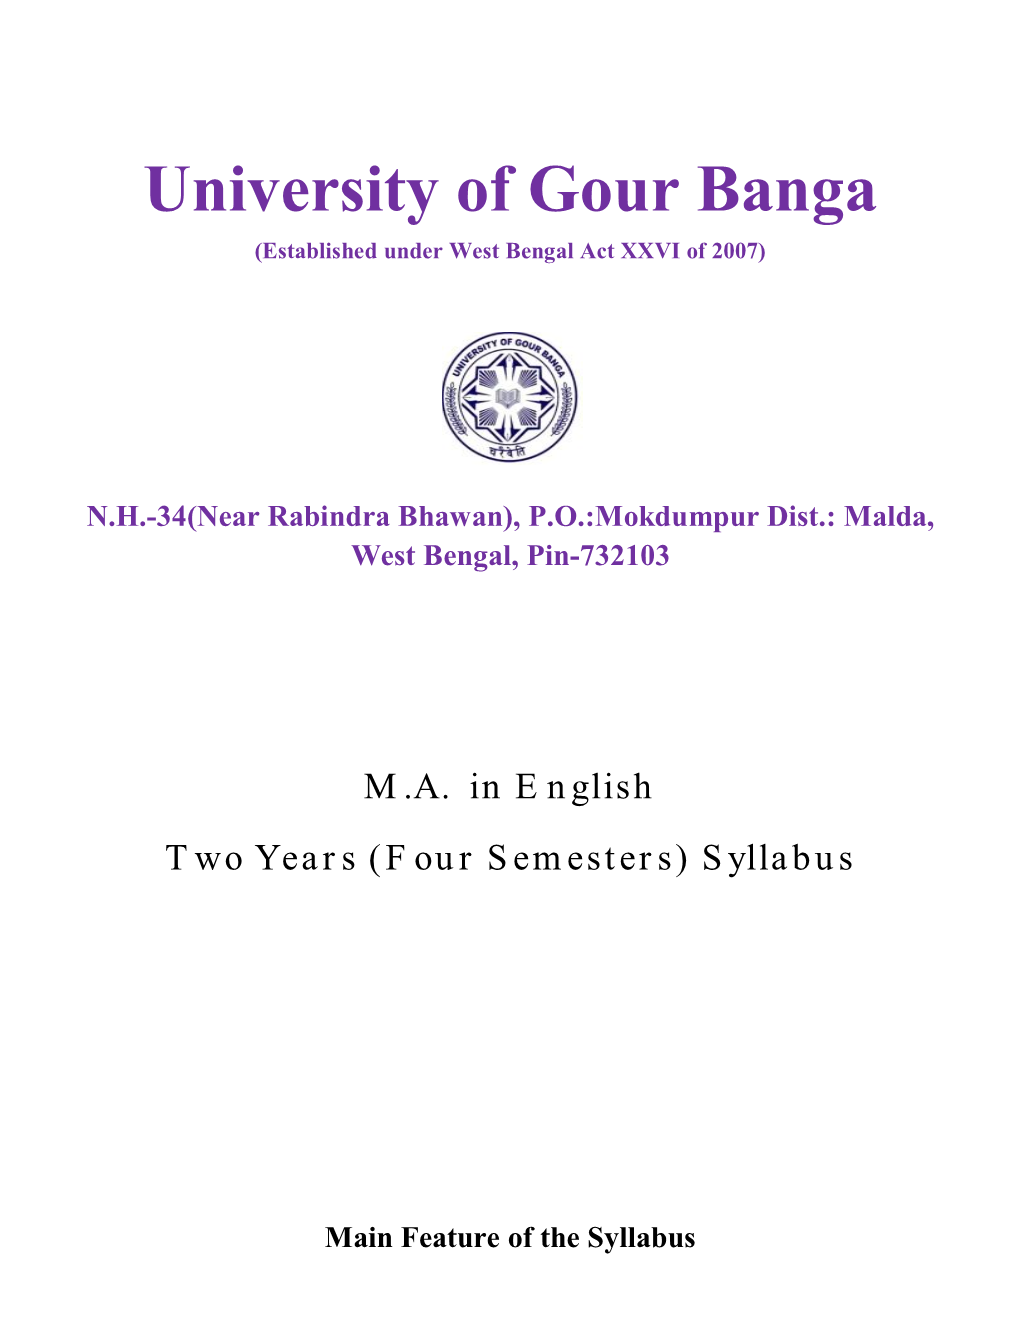 University of Gour Banga (Established Under West Bengal Act XXVI of 2007)